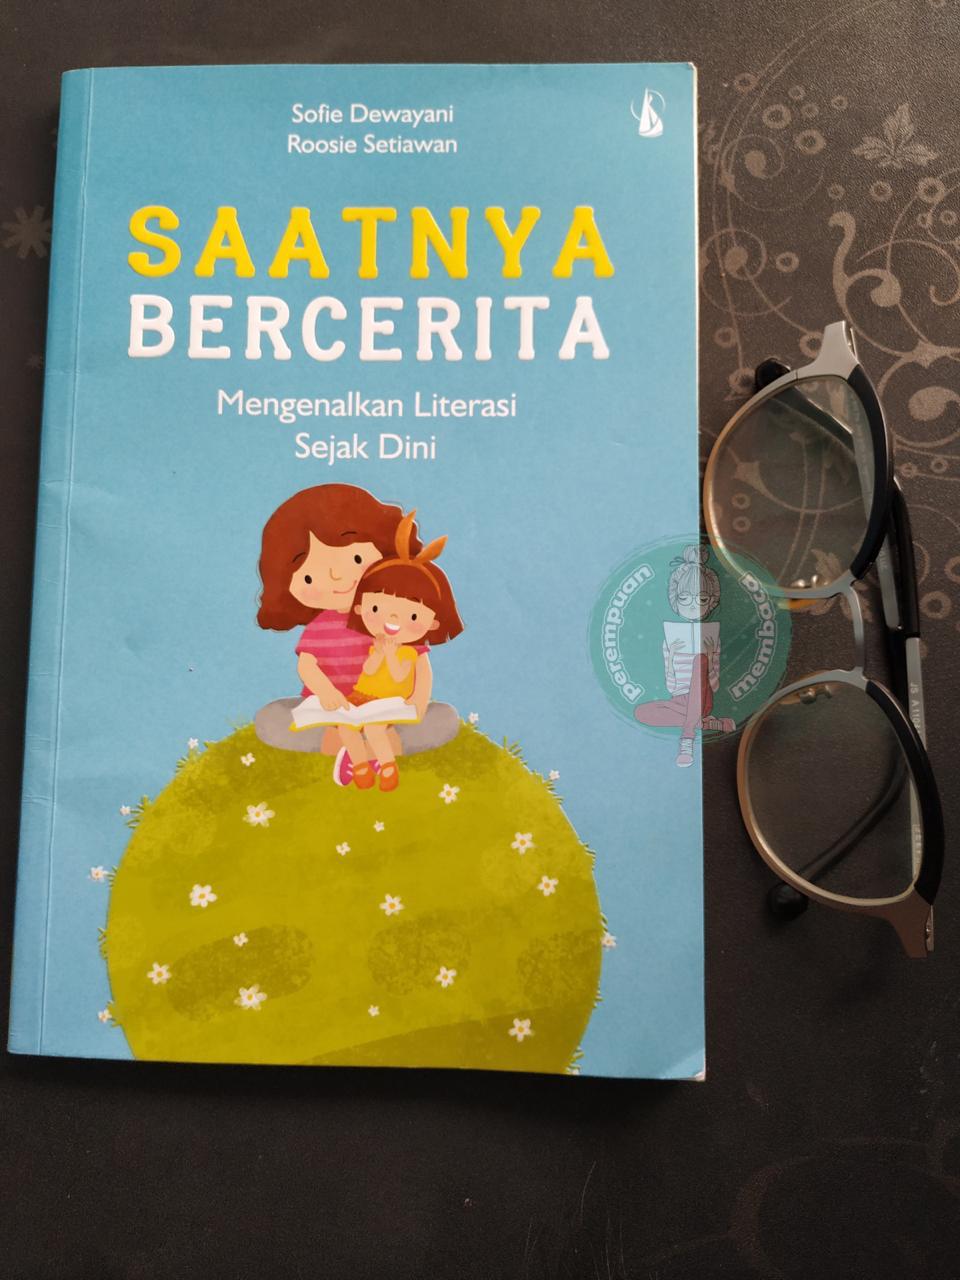 Resensi Buku Saatnya Bercerita Sofie Dewayani Dan Roosie Setiawan Perempuan Membaca